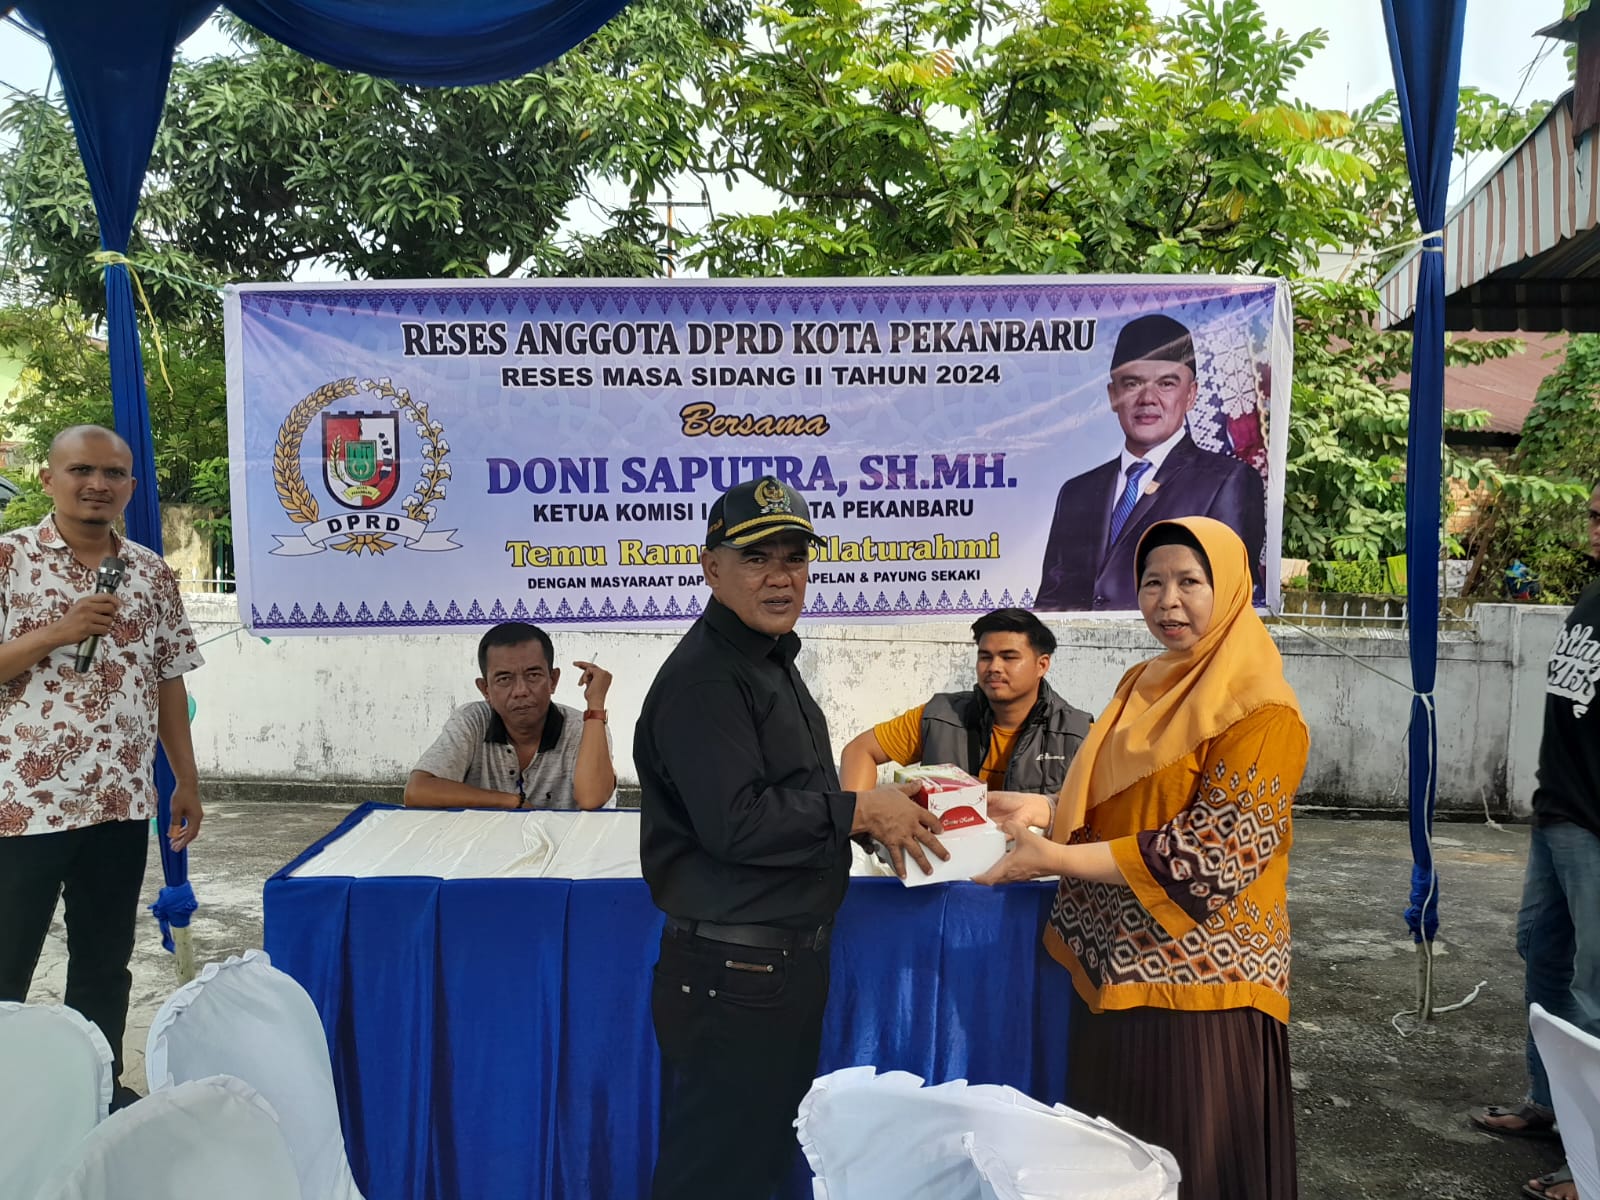 Anggota DPRD Kota Pekanbaru Doni Saputra MH bersama salah satu warga